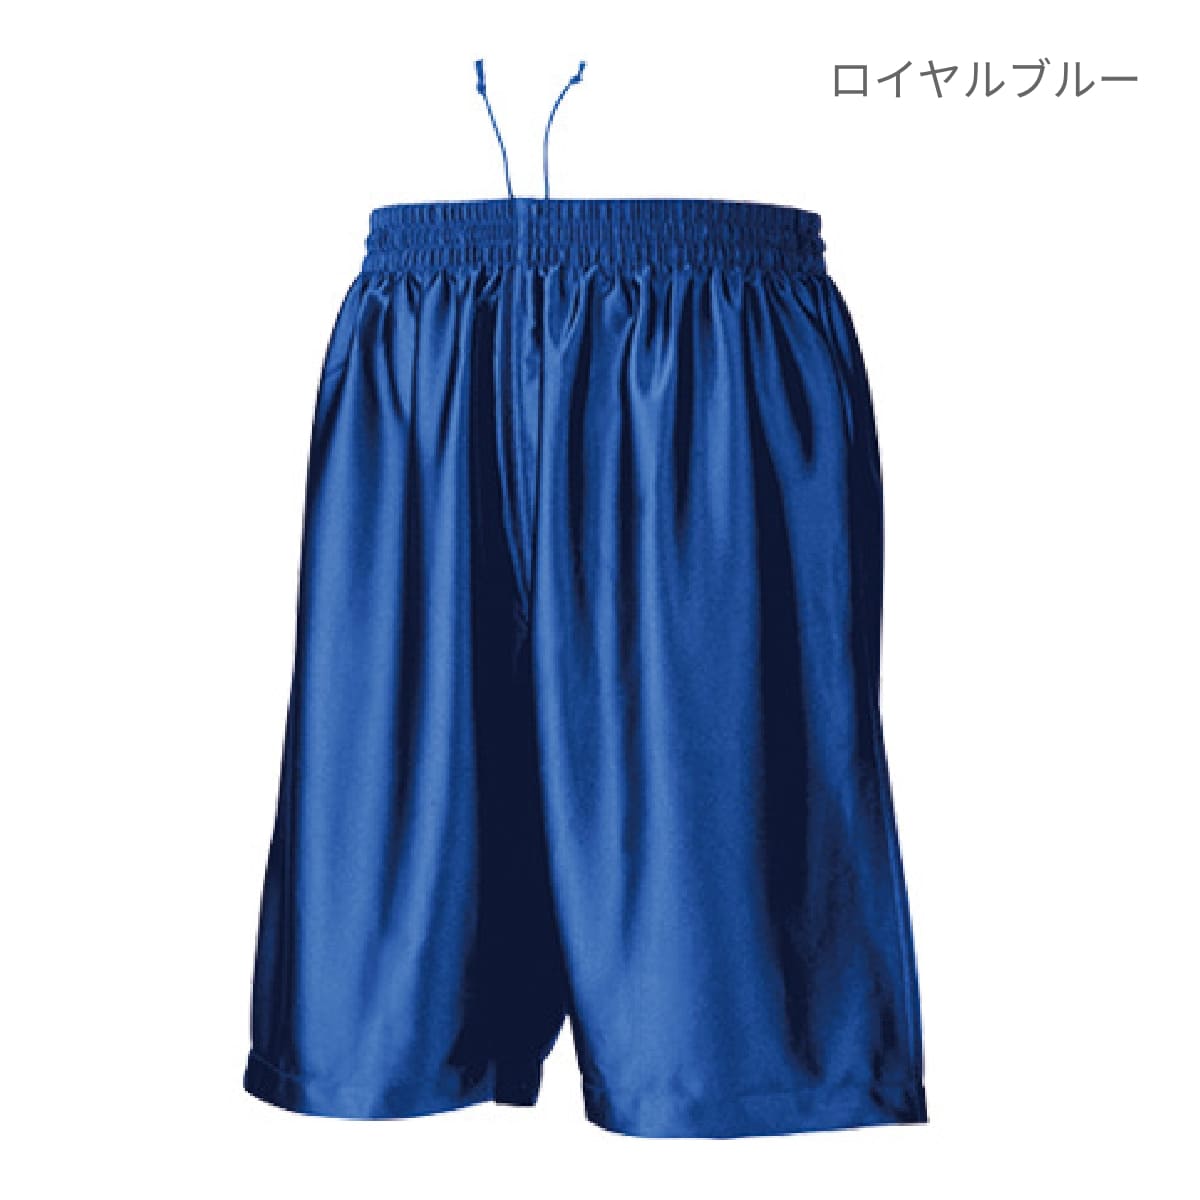 【wundou(ウンドウ)】 バスケットパンツ ロイヤルブルー S